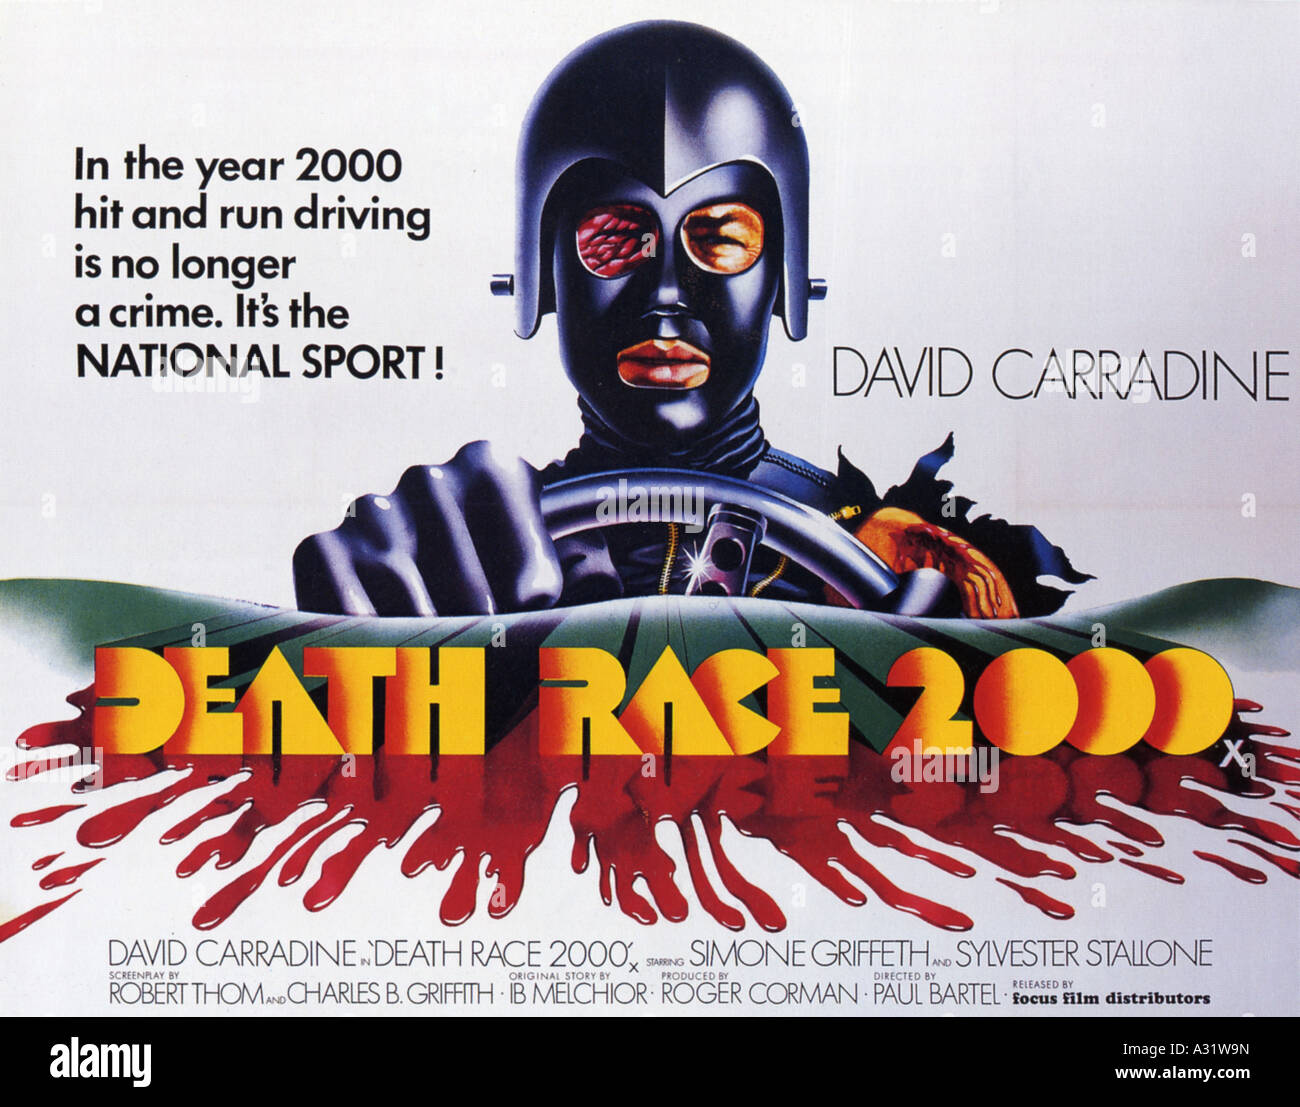 Death race 2000 immagini e fotografie stock ad alta risoluzione - Alamy